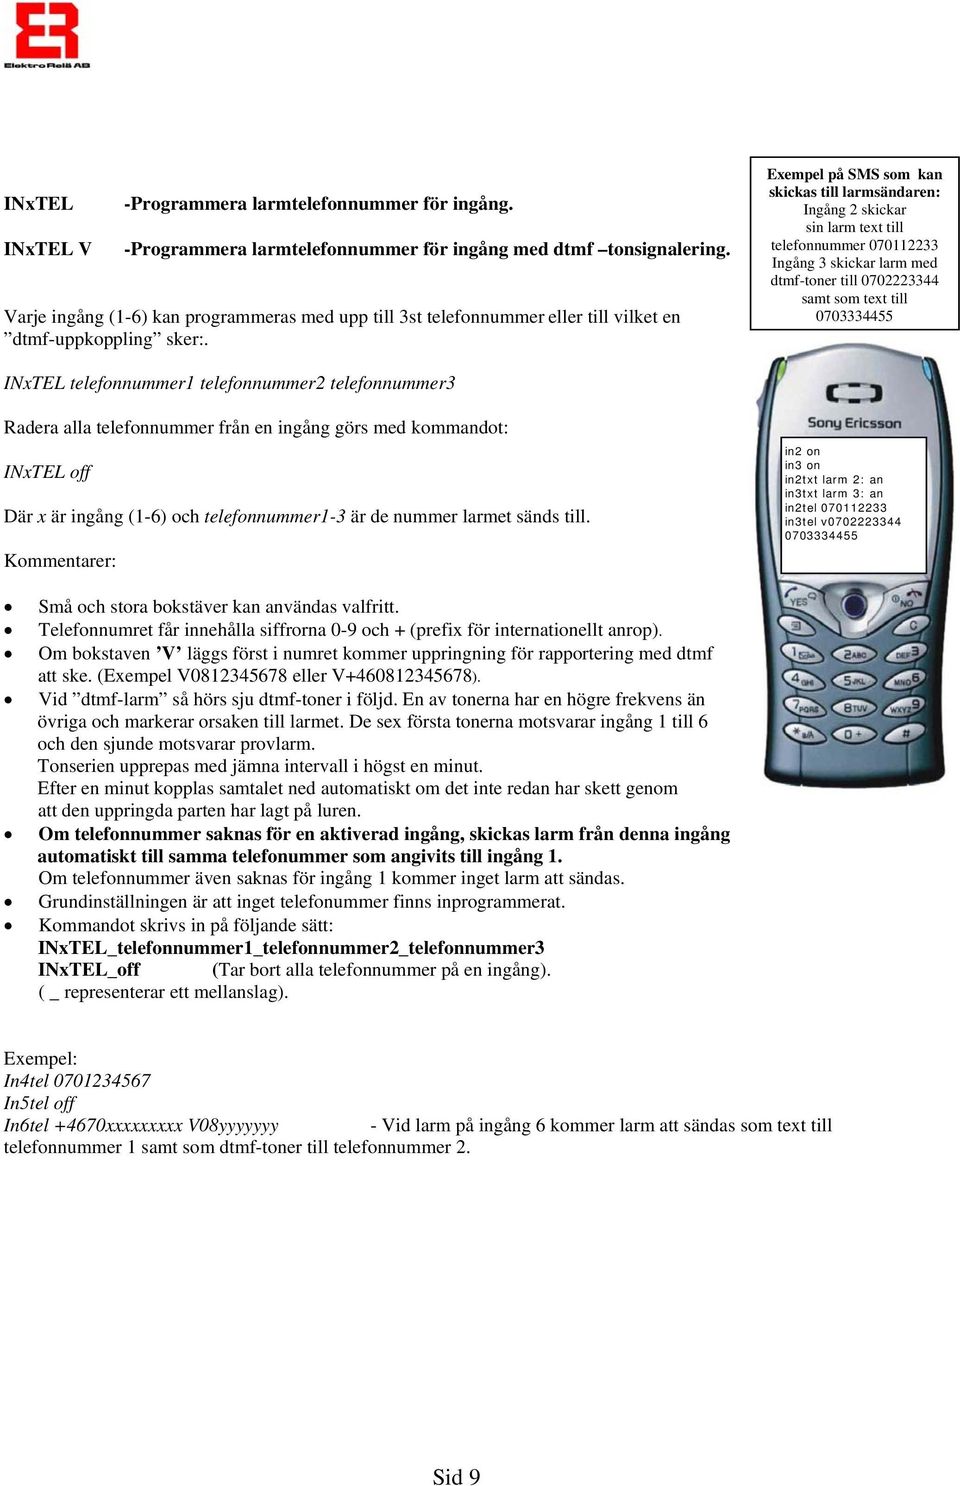 Exempel på SMS som kan skickas till larmsändaren: Ingång 2 skickar sin larm text till telefonnummer 070112233 Ingång 3 skickar larm med dtmf-toner till 0702223344 samt som text till 0703334455 INxTEL